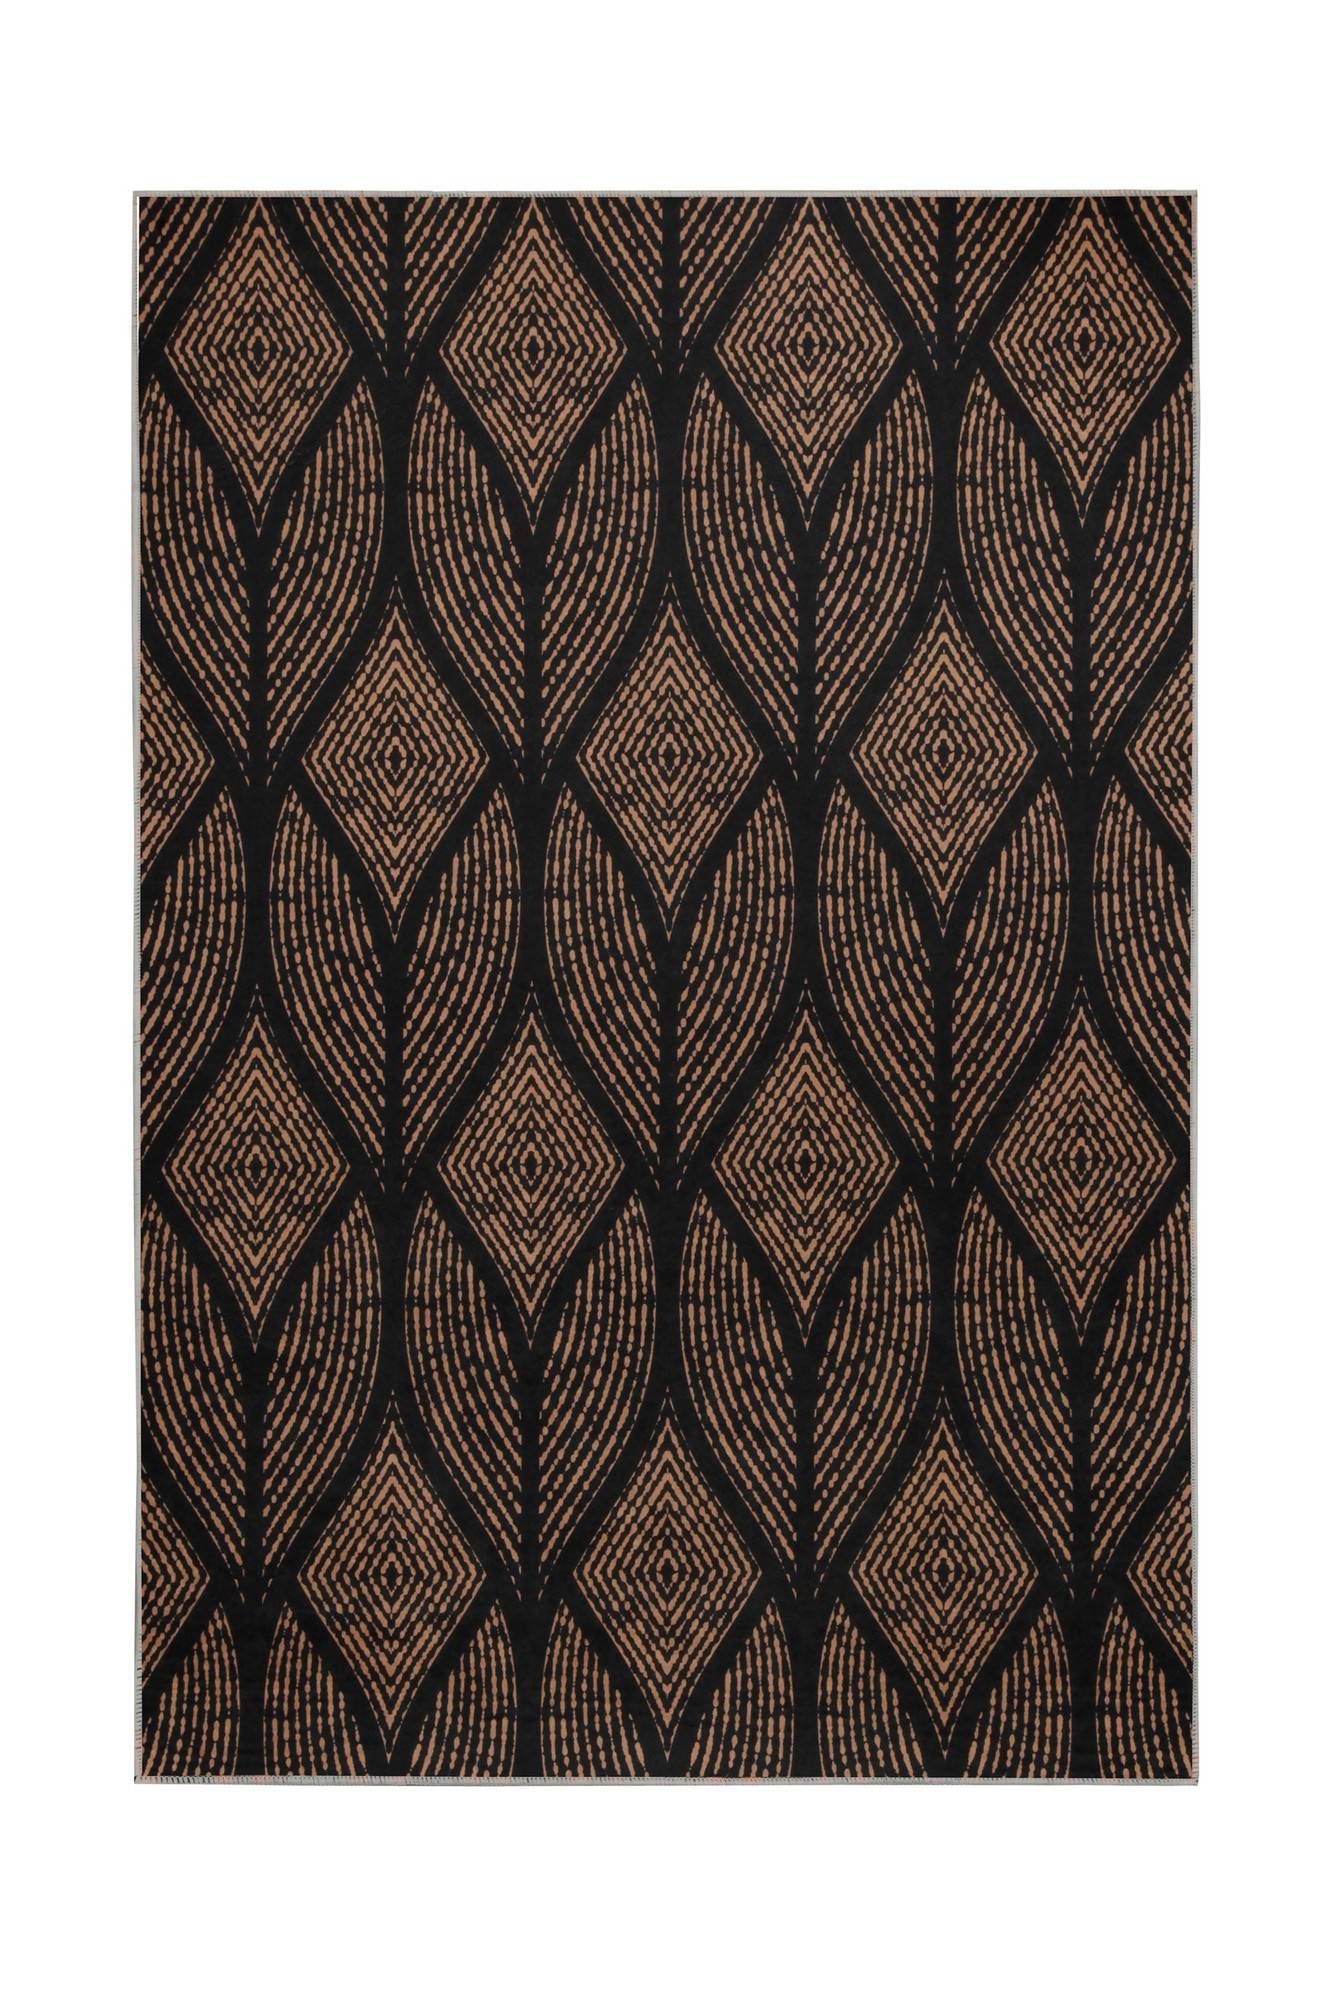 Zolanda Teppich 160x230cm Blättermuster Braun und Schwarz unter rutschfestem Filz